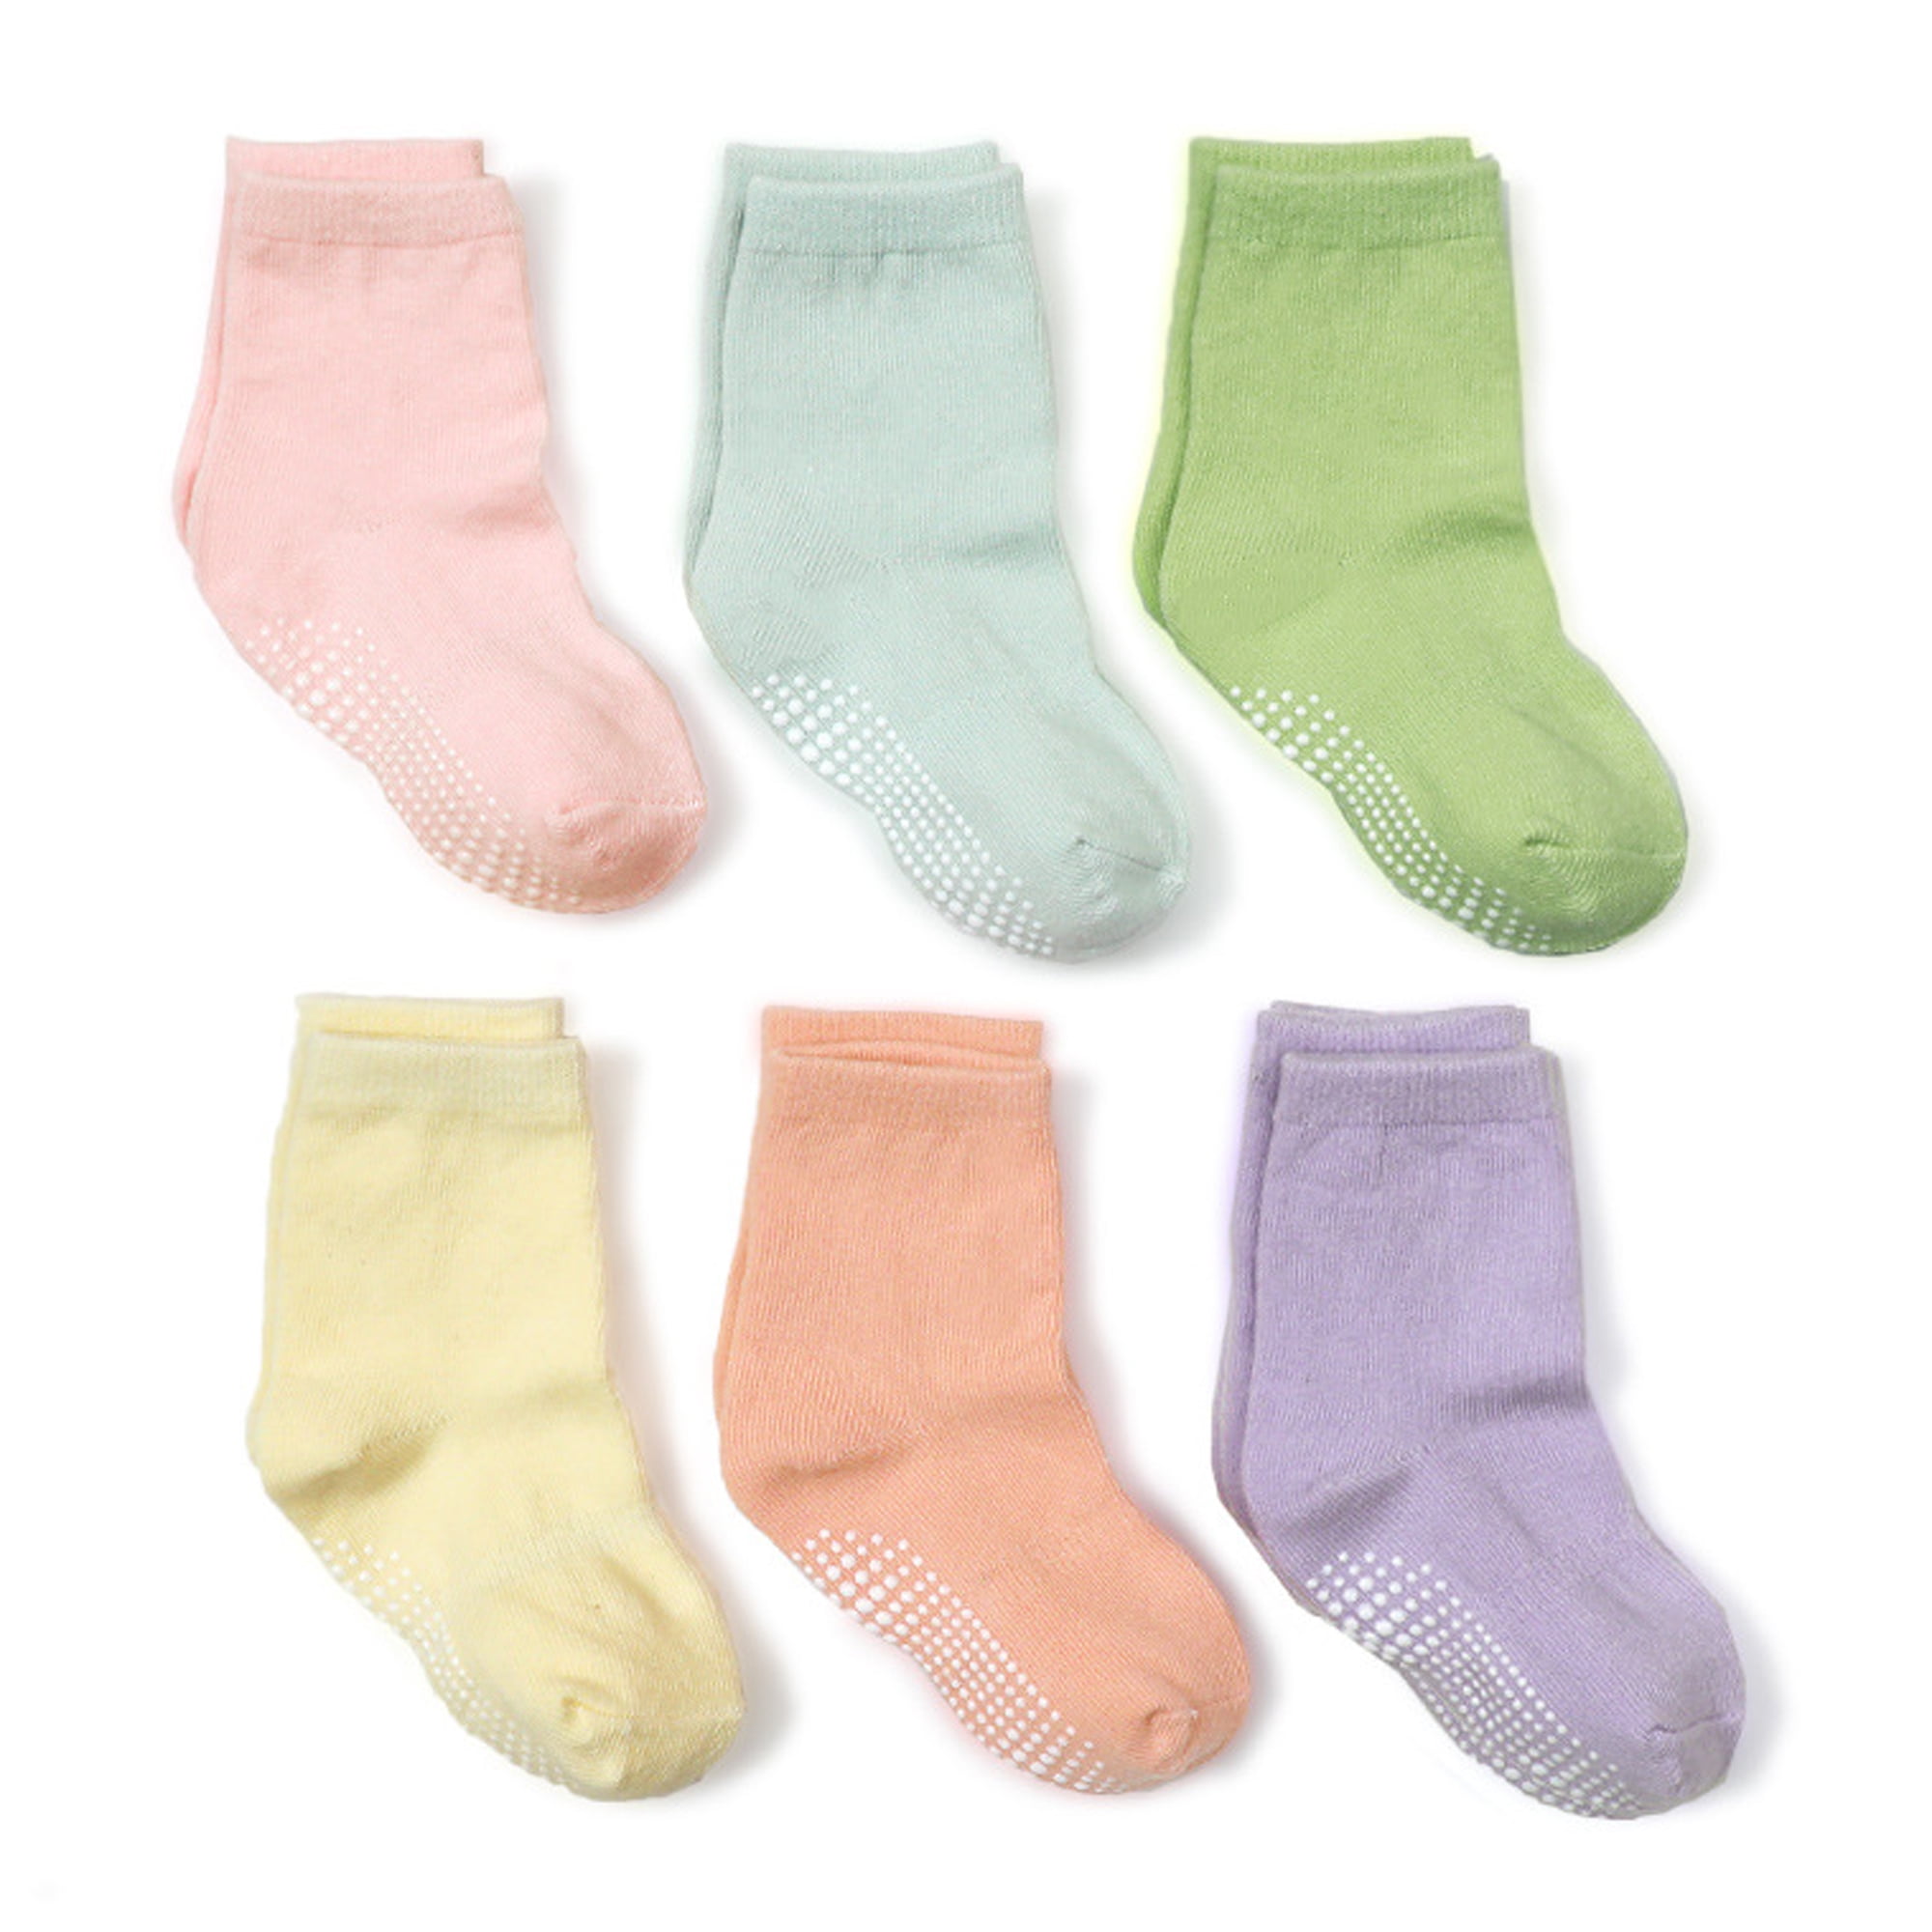 Fraobbg 6 Pack Baby Girls Non Slip Crew Socks For Toddlers Cotton Grips ...